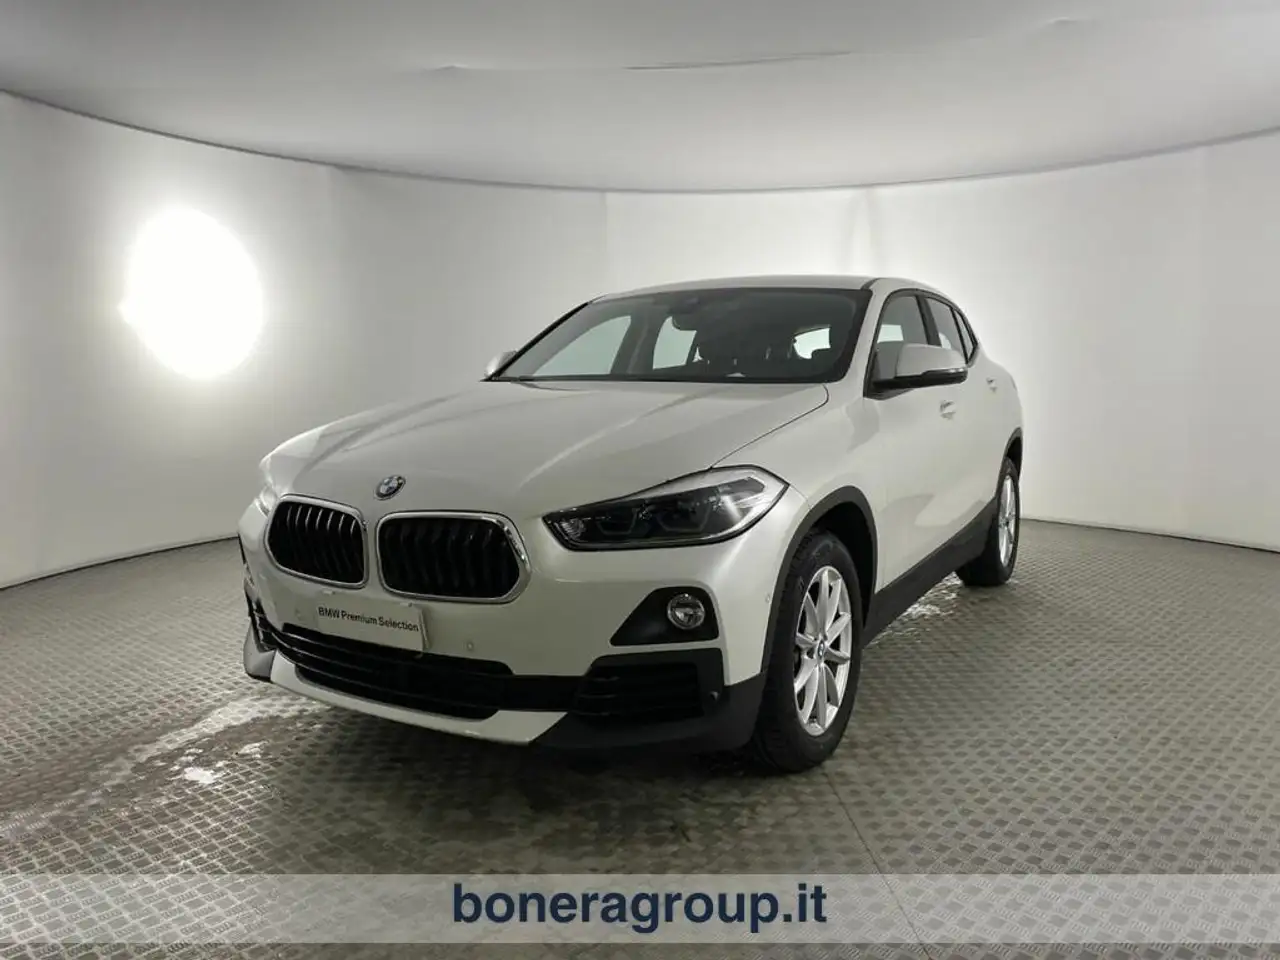 BMW X2 Andere in Wit tweedehands in Brescia voor € 25.500,-